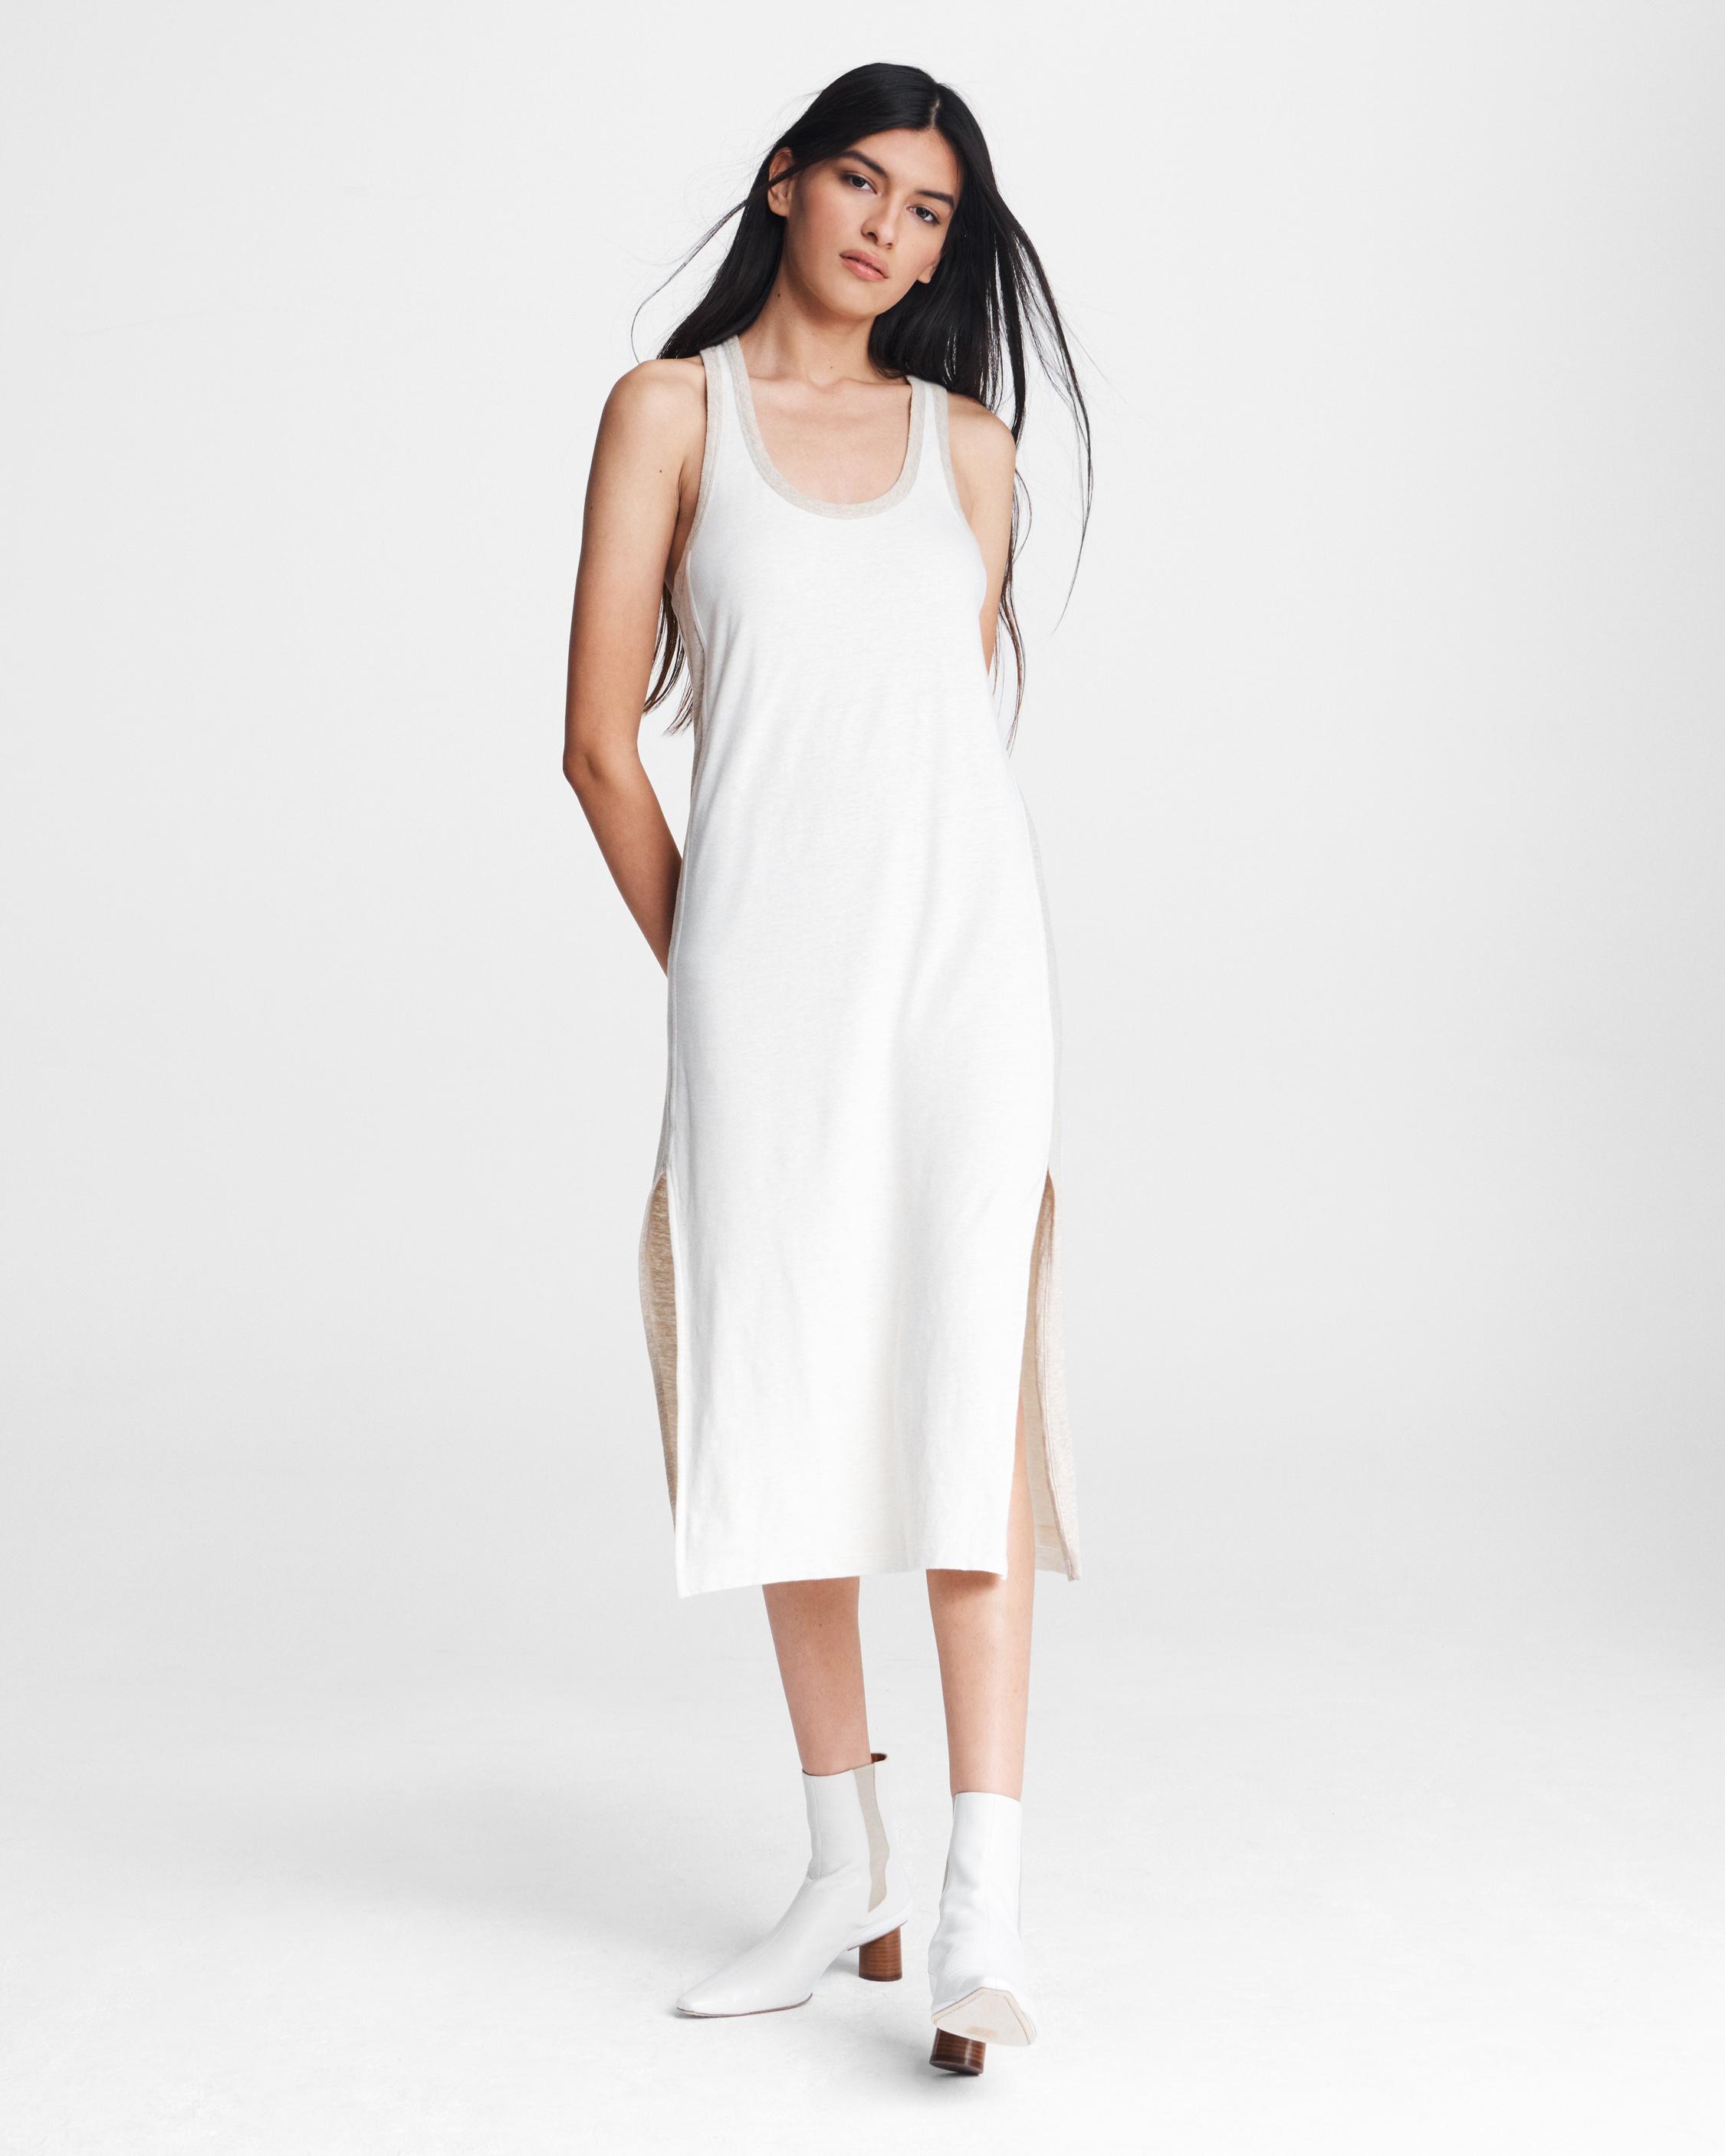 white linen tank dress